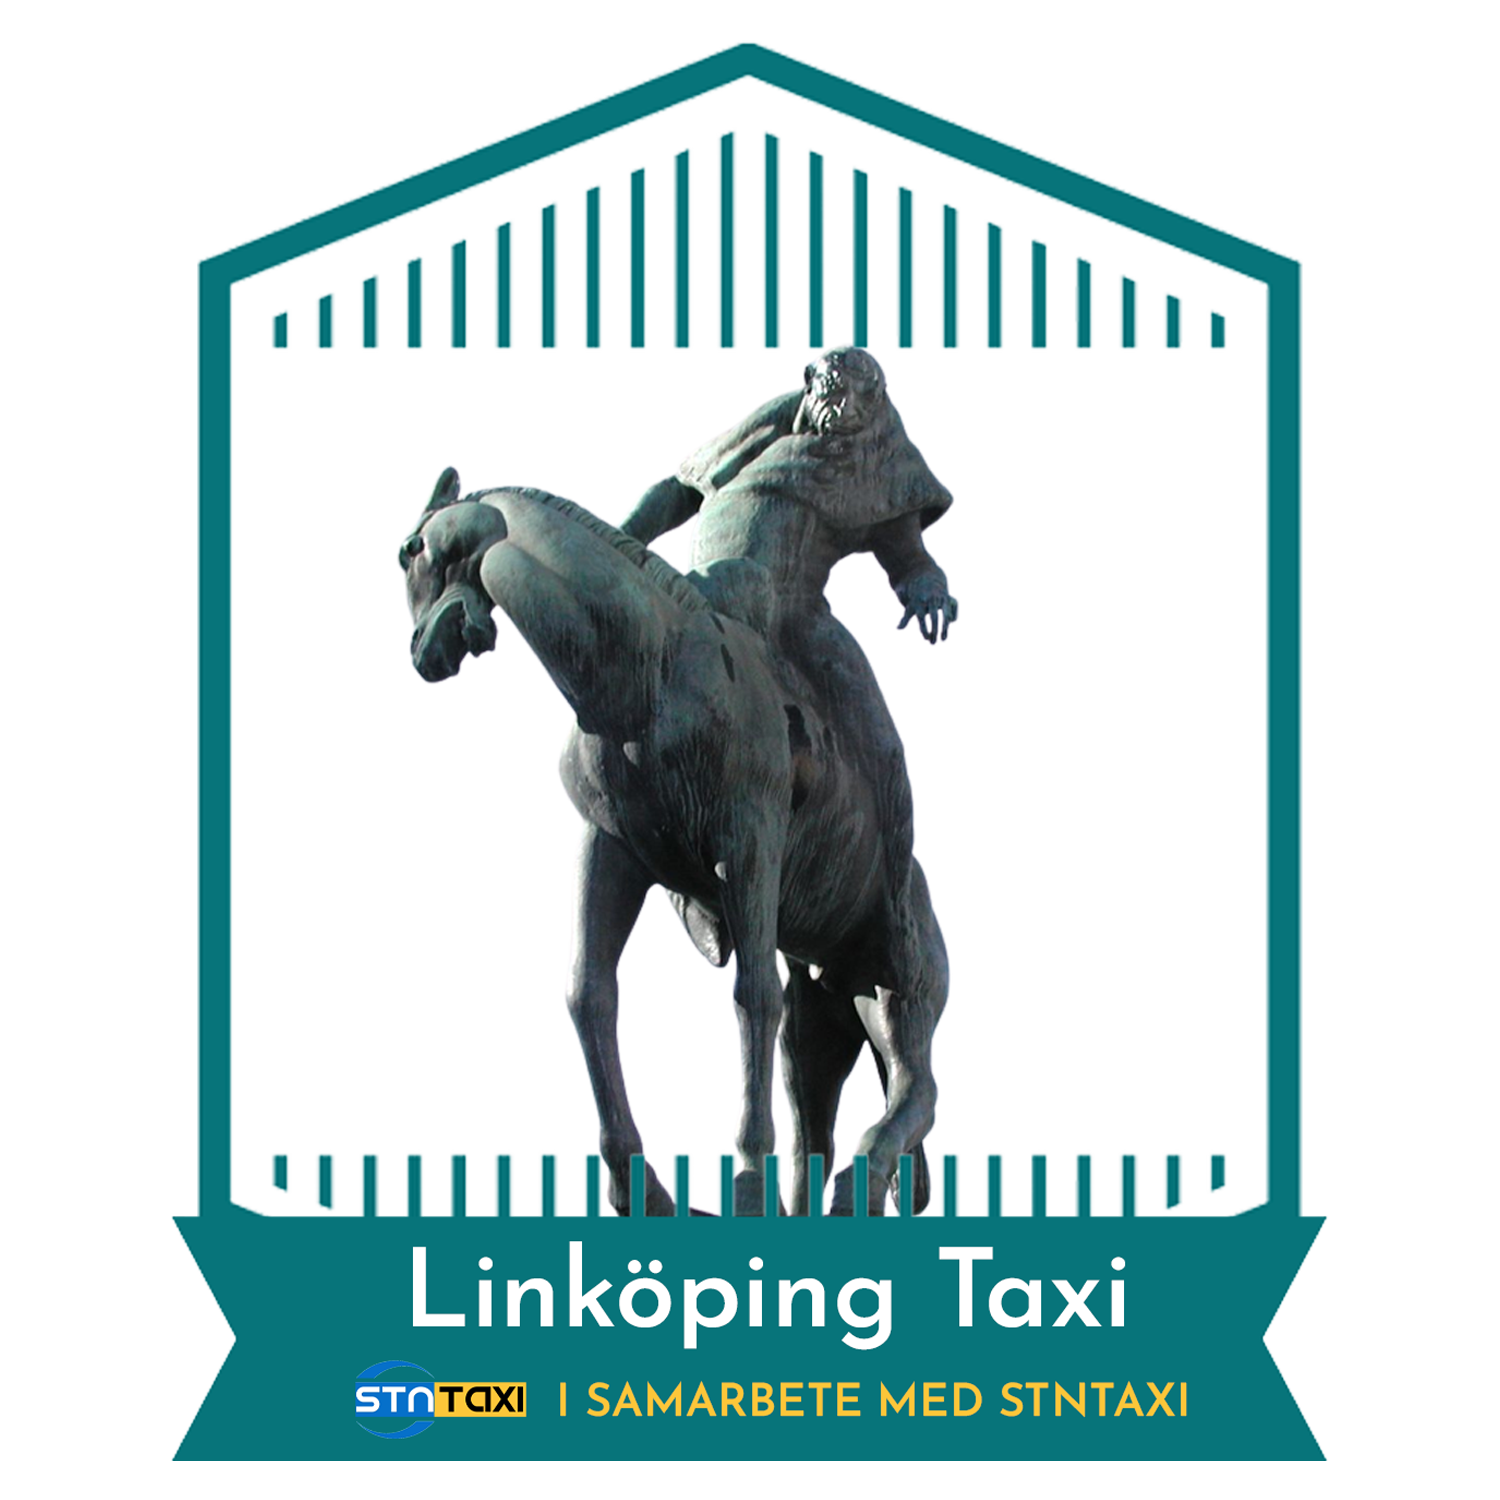 Linköping taxi